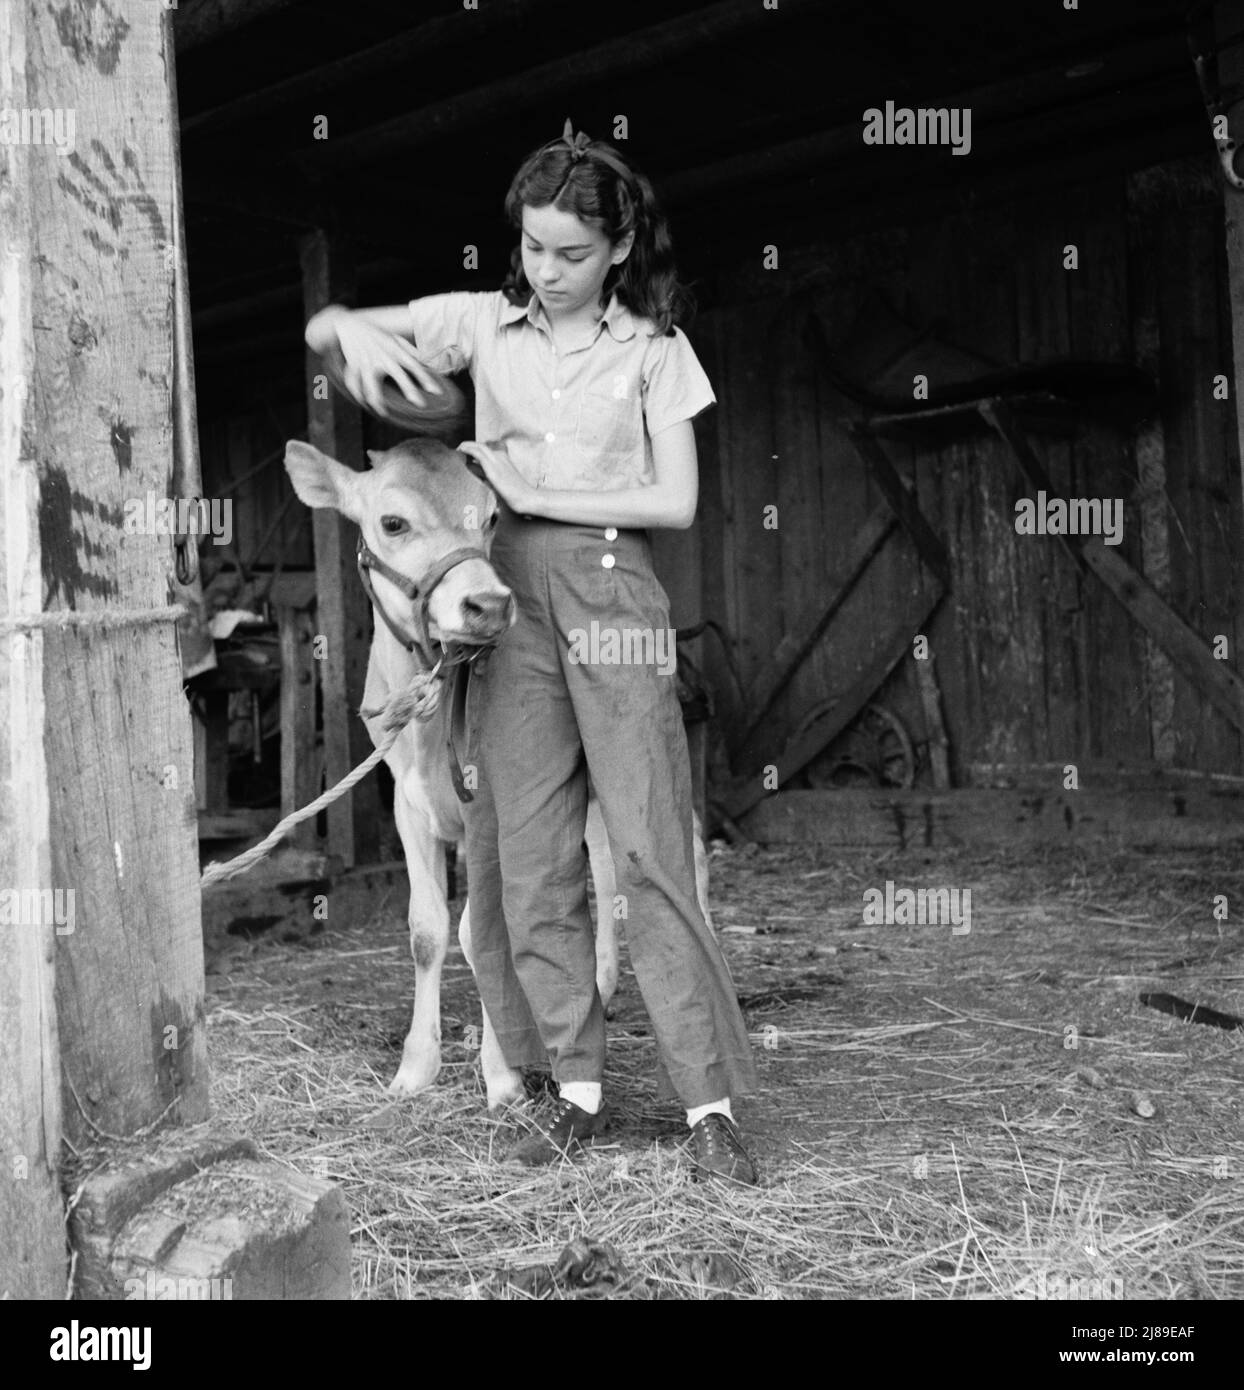 Junges Mädchen, Tochter eines kleinen Birnenbauers, pflegt ihr Kalb. Sie gehört dem 4-H Club an, der größten Bewegung der ländlichen Jugend in Amerika. Oregon. Jackson County, in der Nähe von Medford. Stockfoto